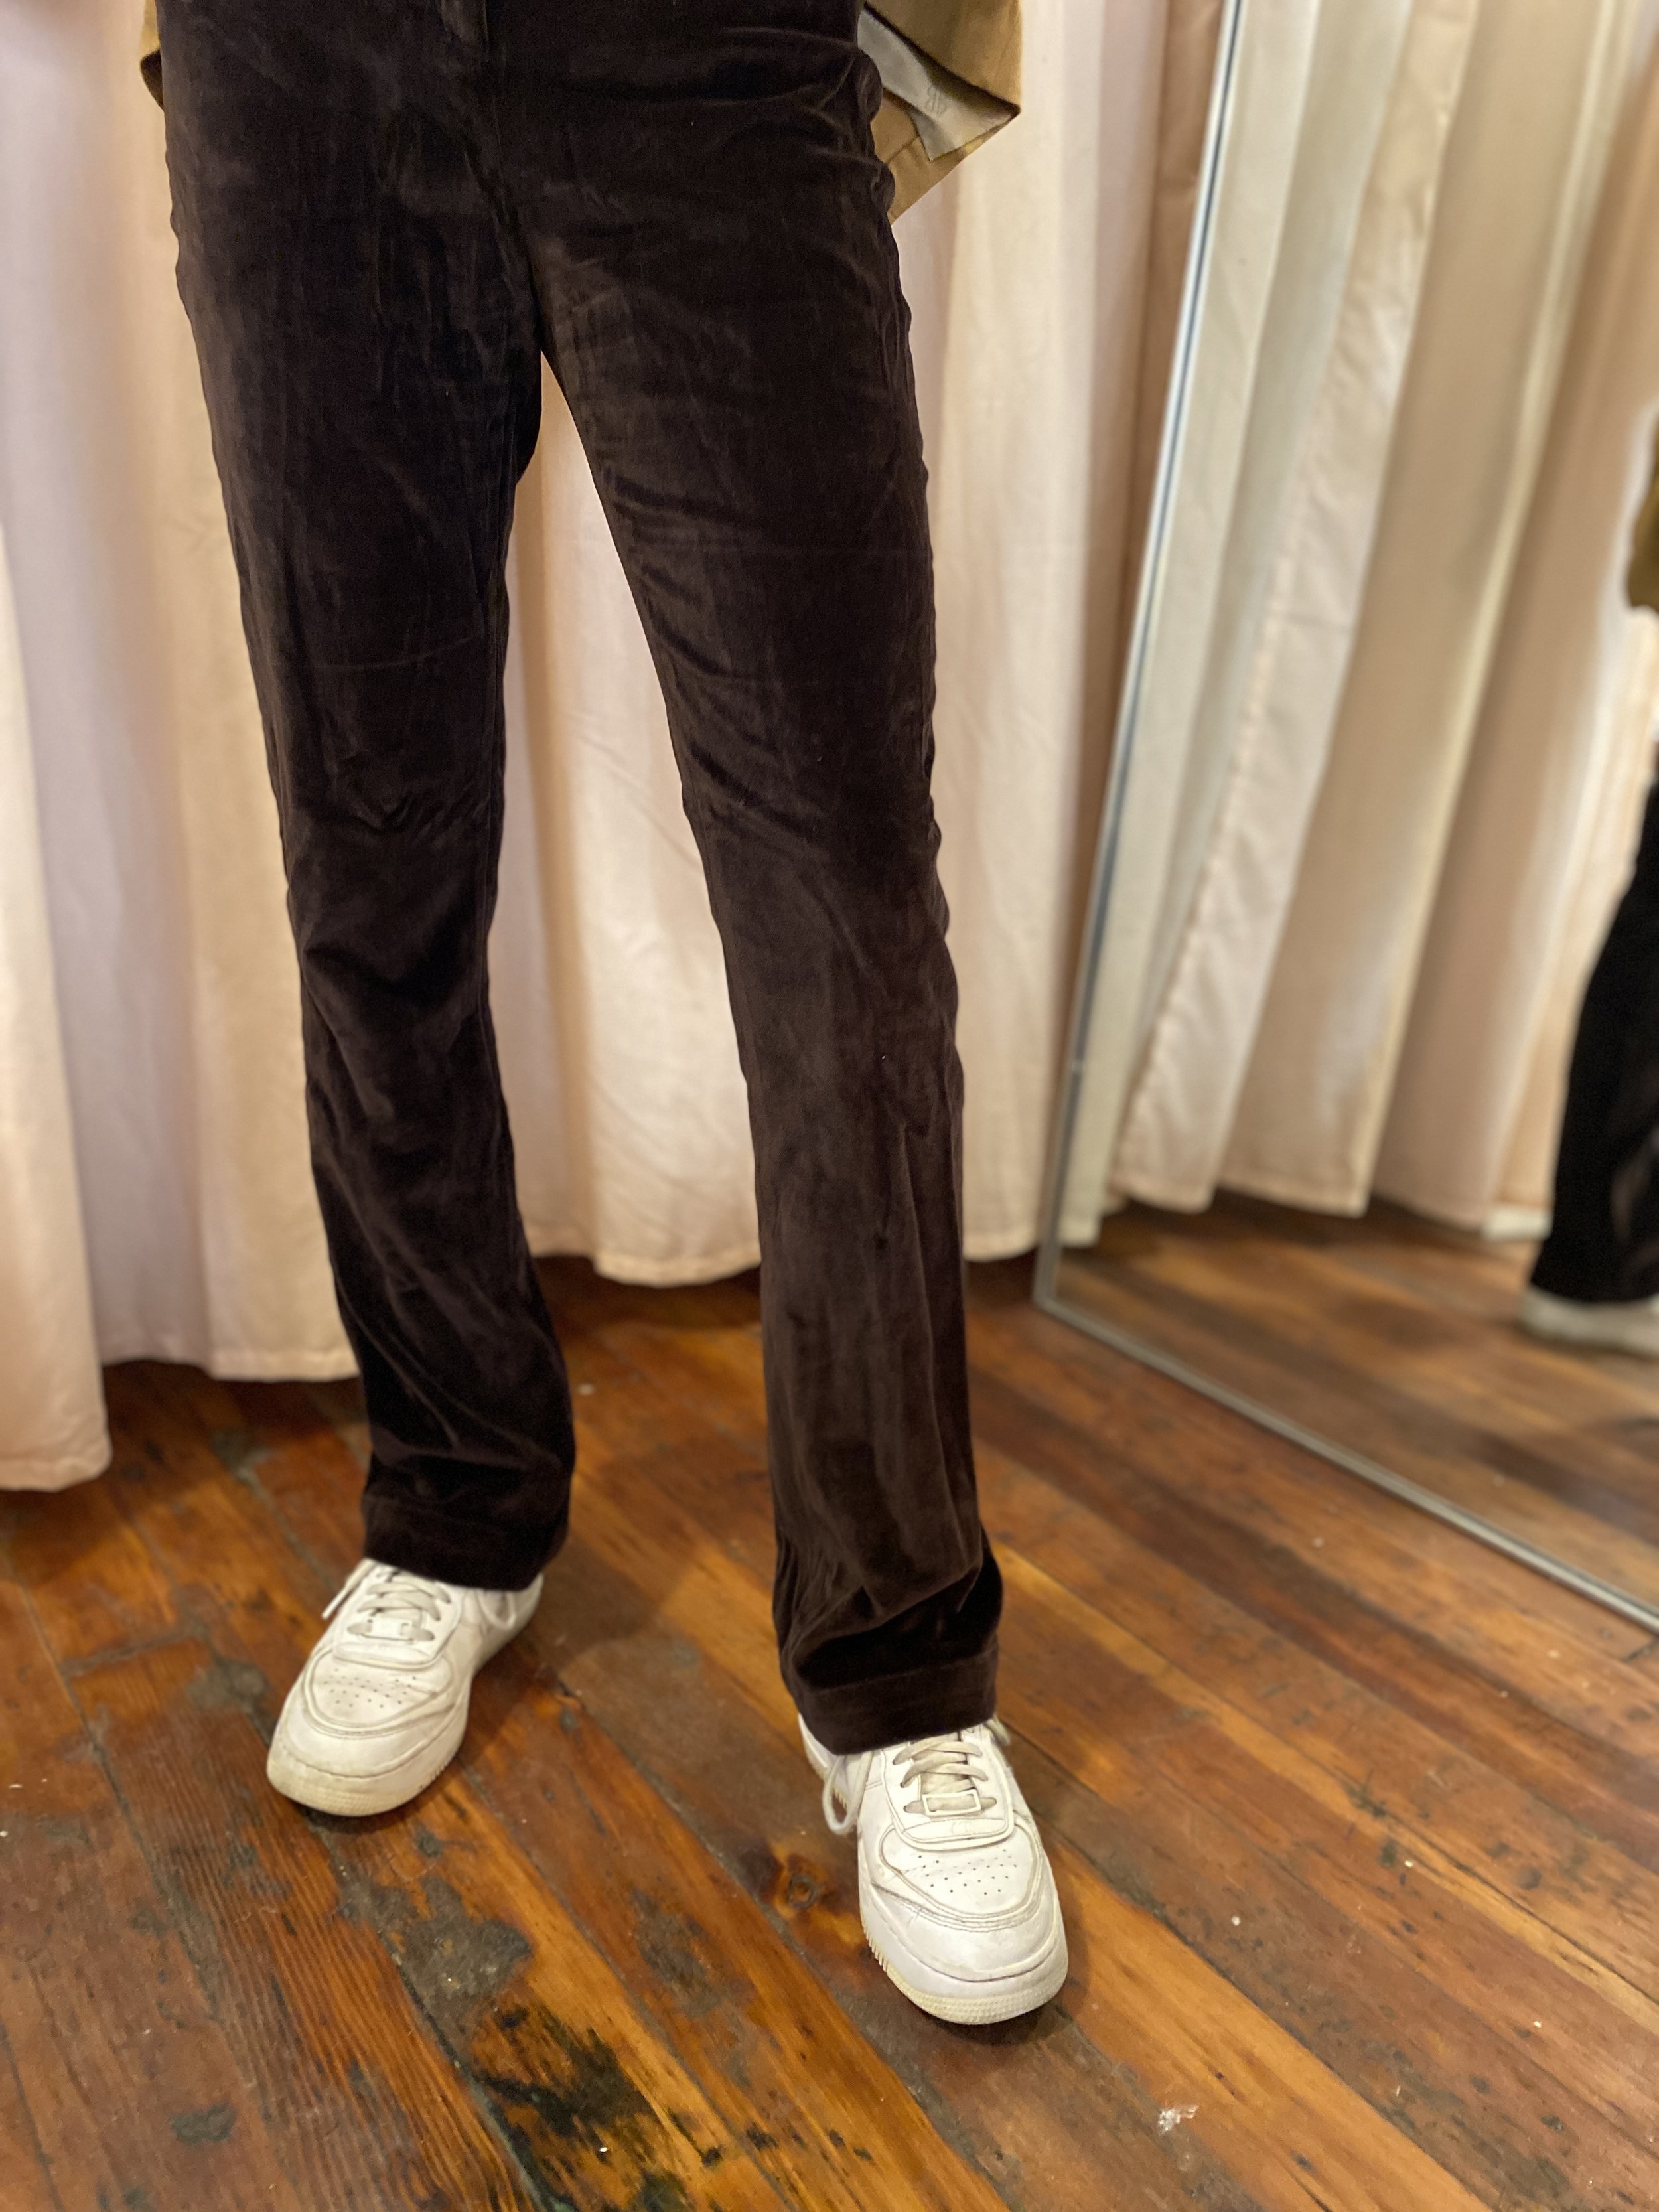 Black Velvet Suit : Made To Measure Custom Jeans For Men & Women,  MakeYourOwnJeans®